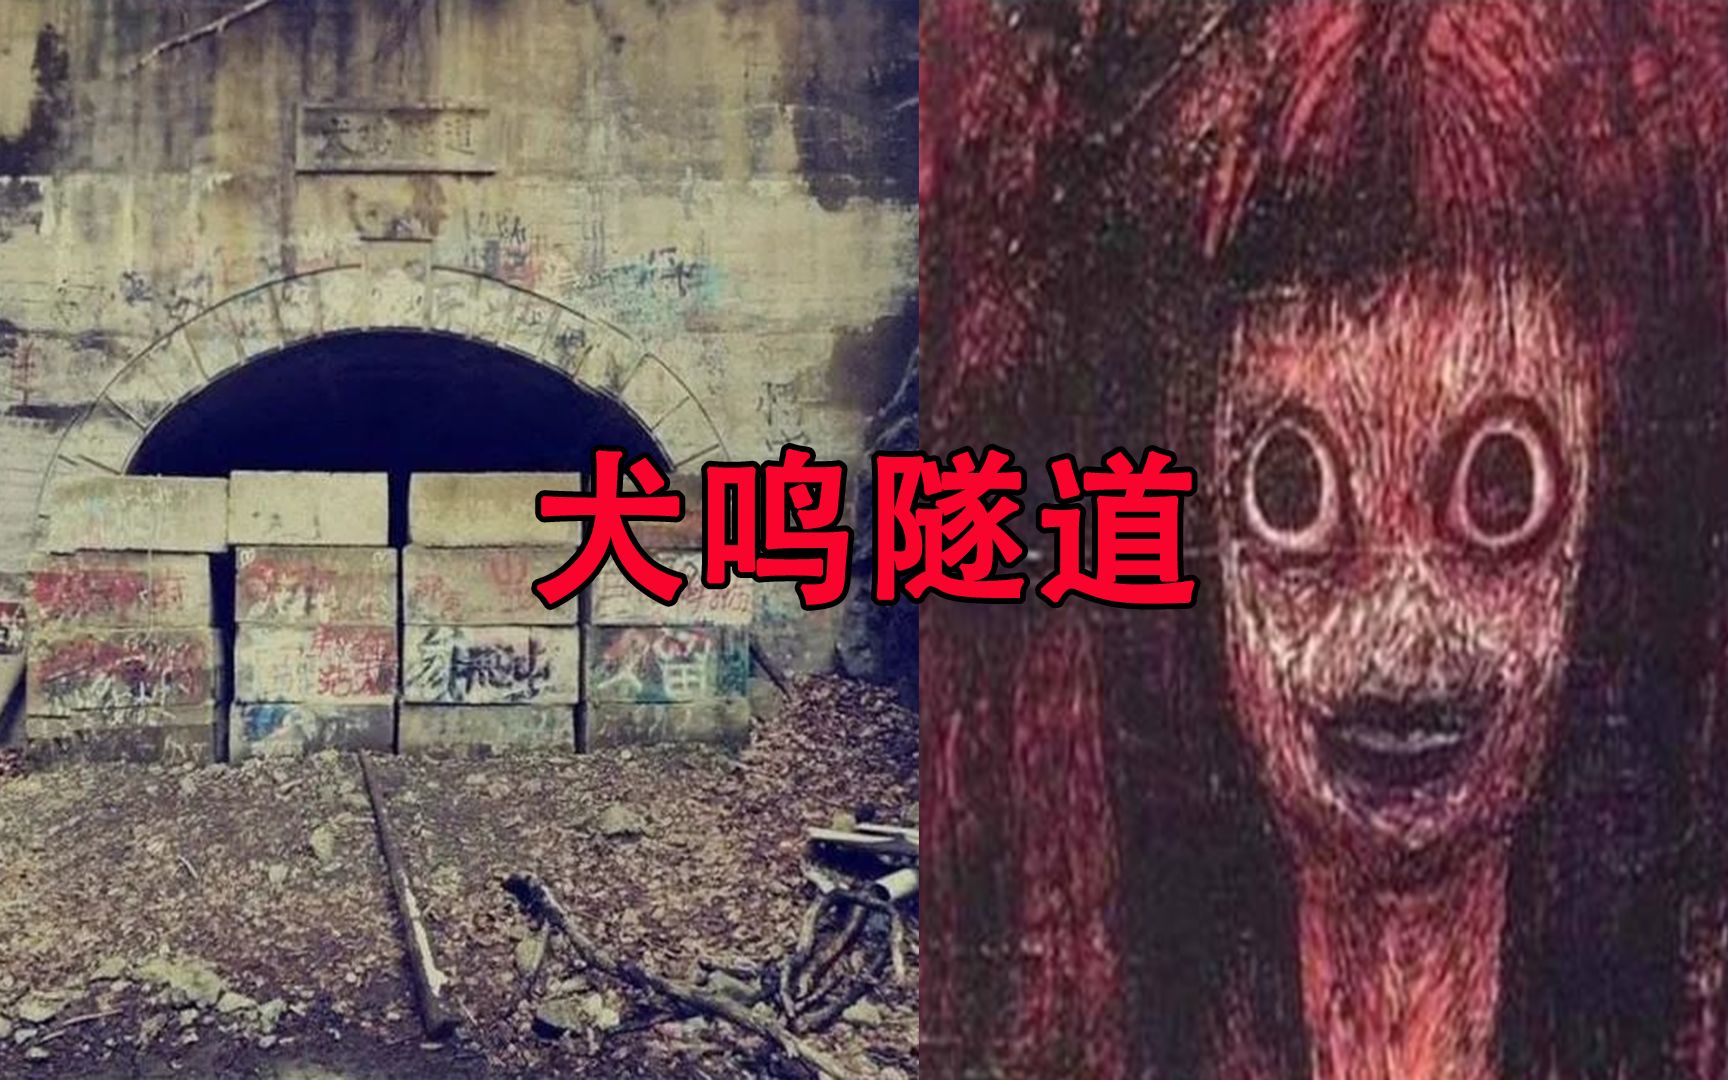 在日本省传说中，犬鸣隧道是没有人能活着走过去的隧道。